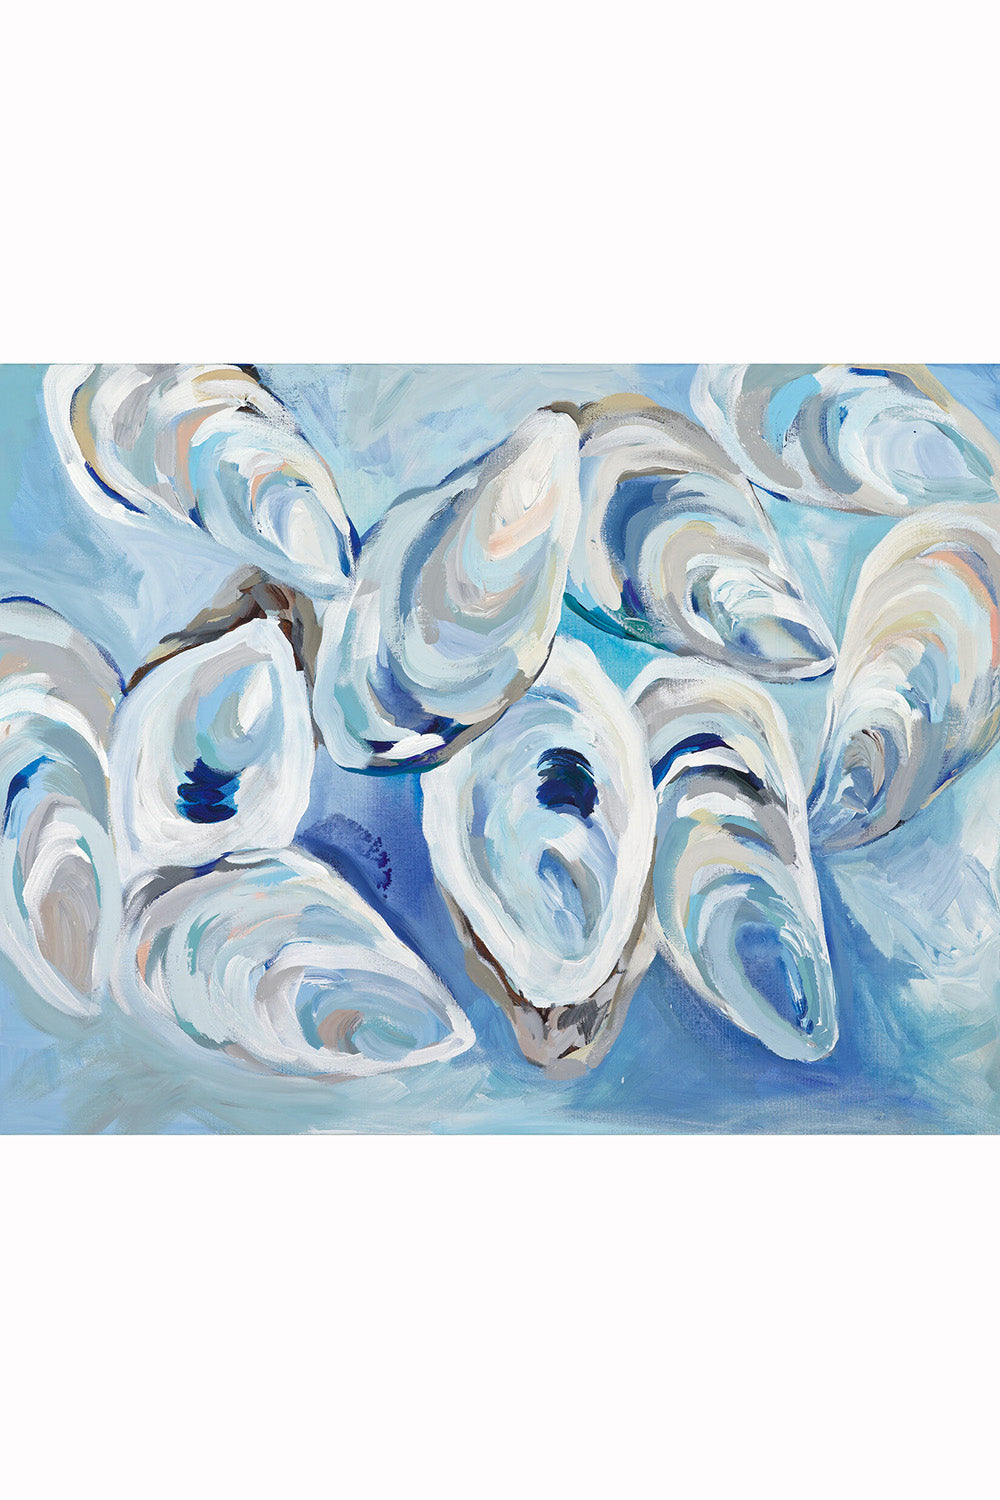 Kim Hovell Art Print - Sky Blue Oyster Cluster